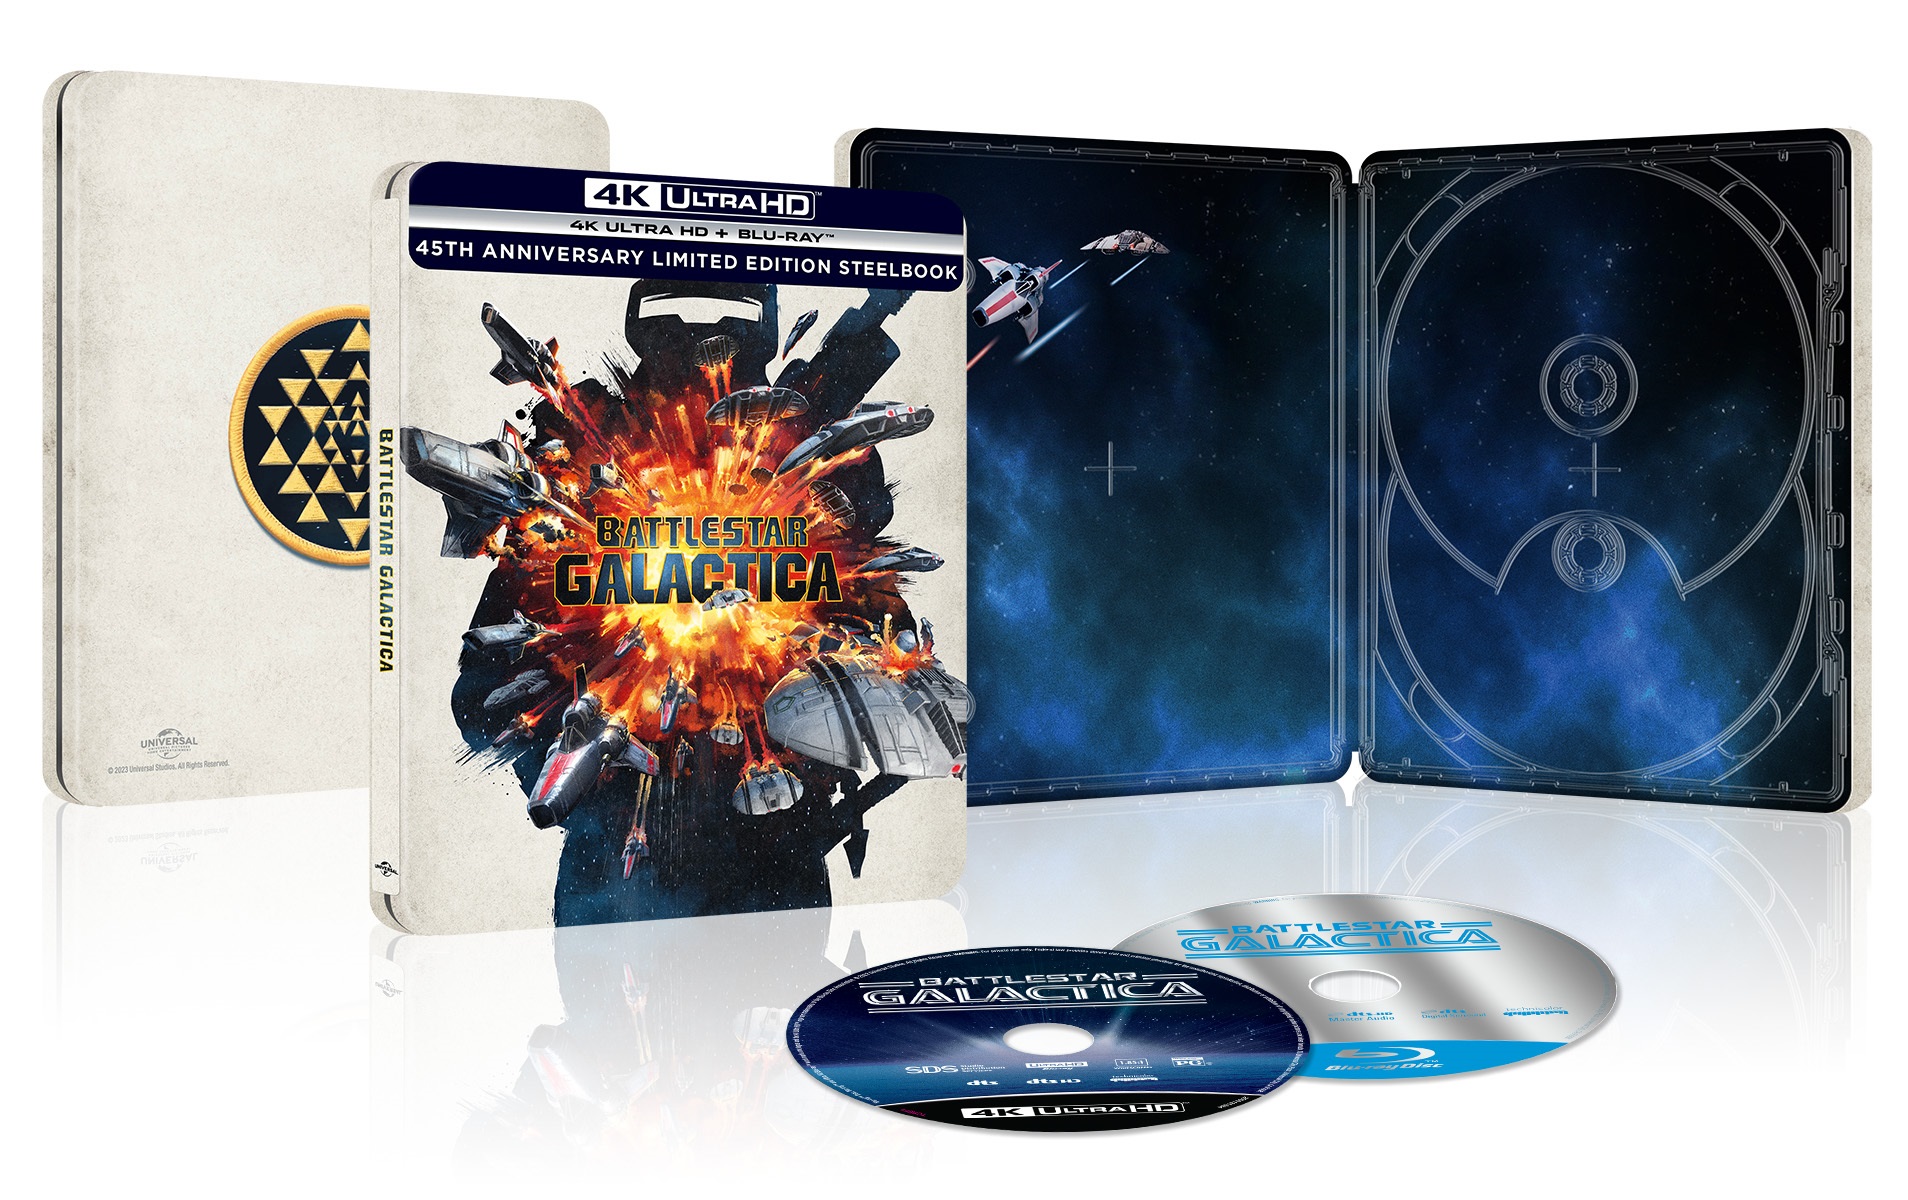  Battlestar Galactica [SteelBook] [4K Ultra HD Blu-ray/Blu-ray] [Only @ Best Buy]